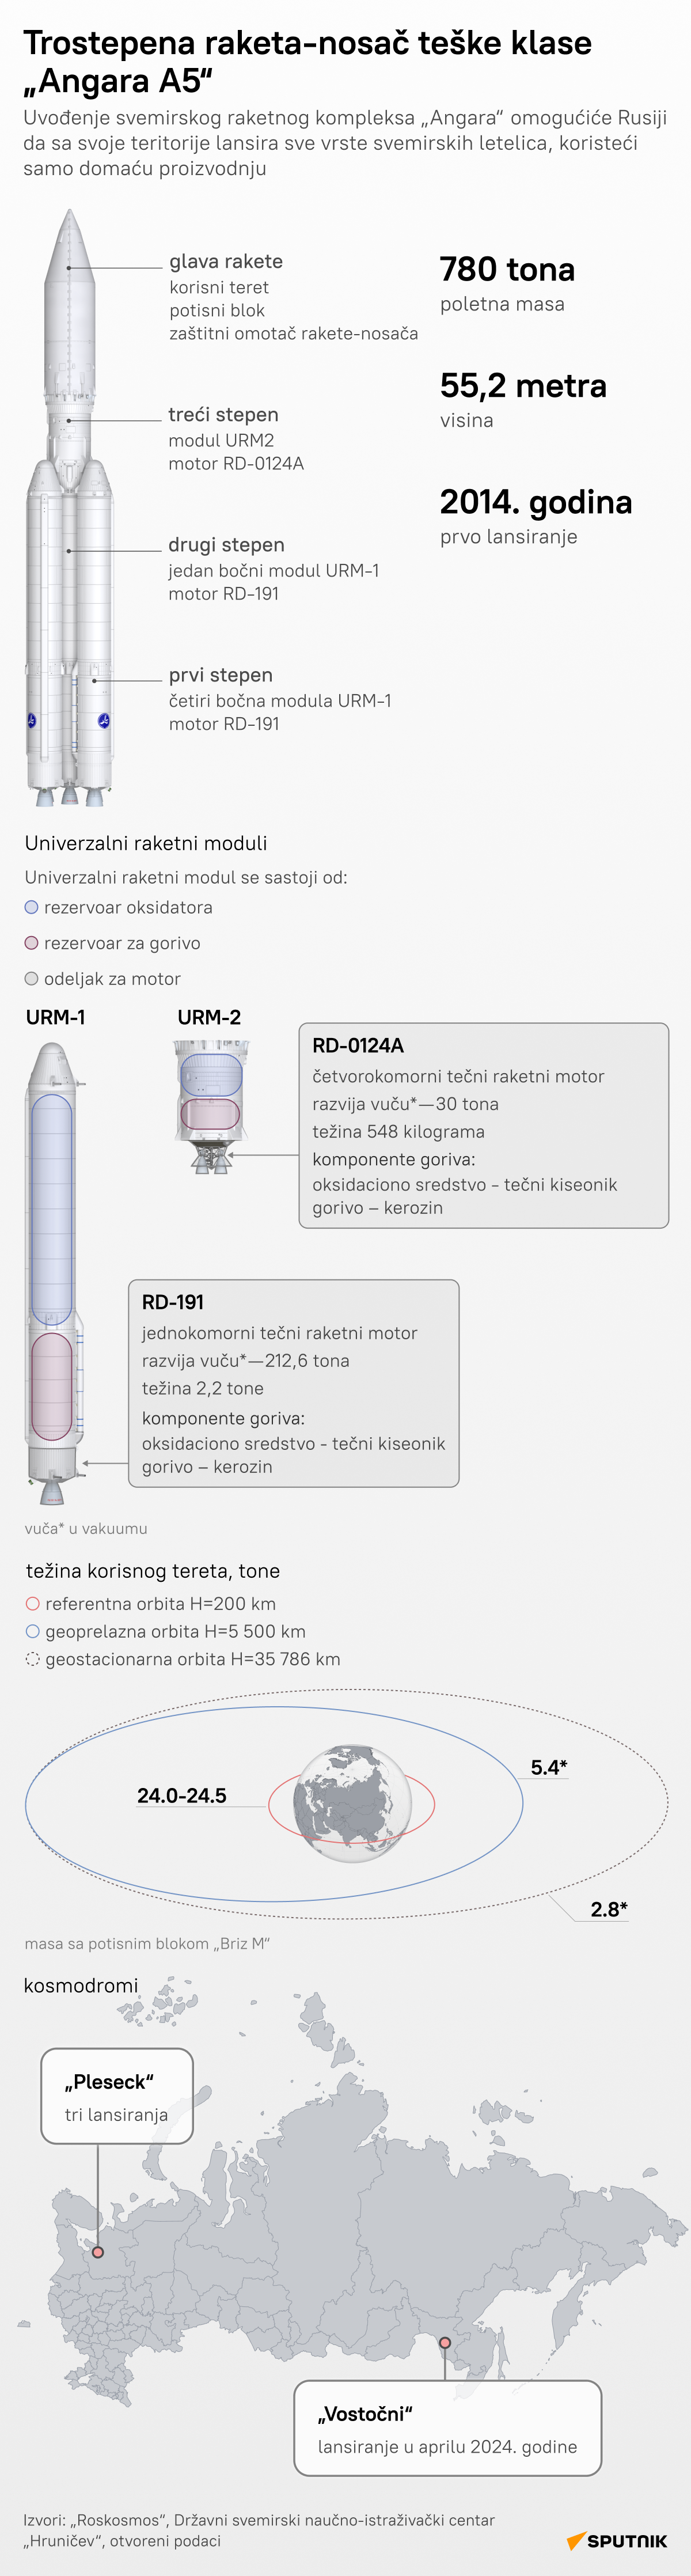 infografika raketa Angara LAT desk - Sputnik Srbija